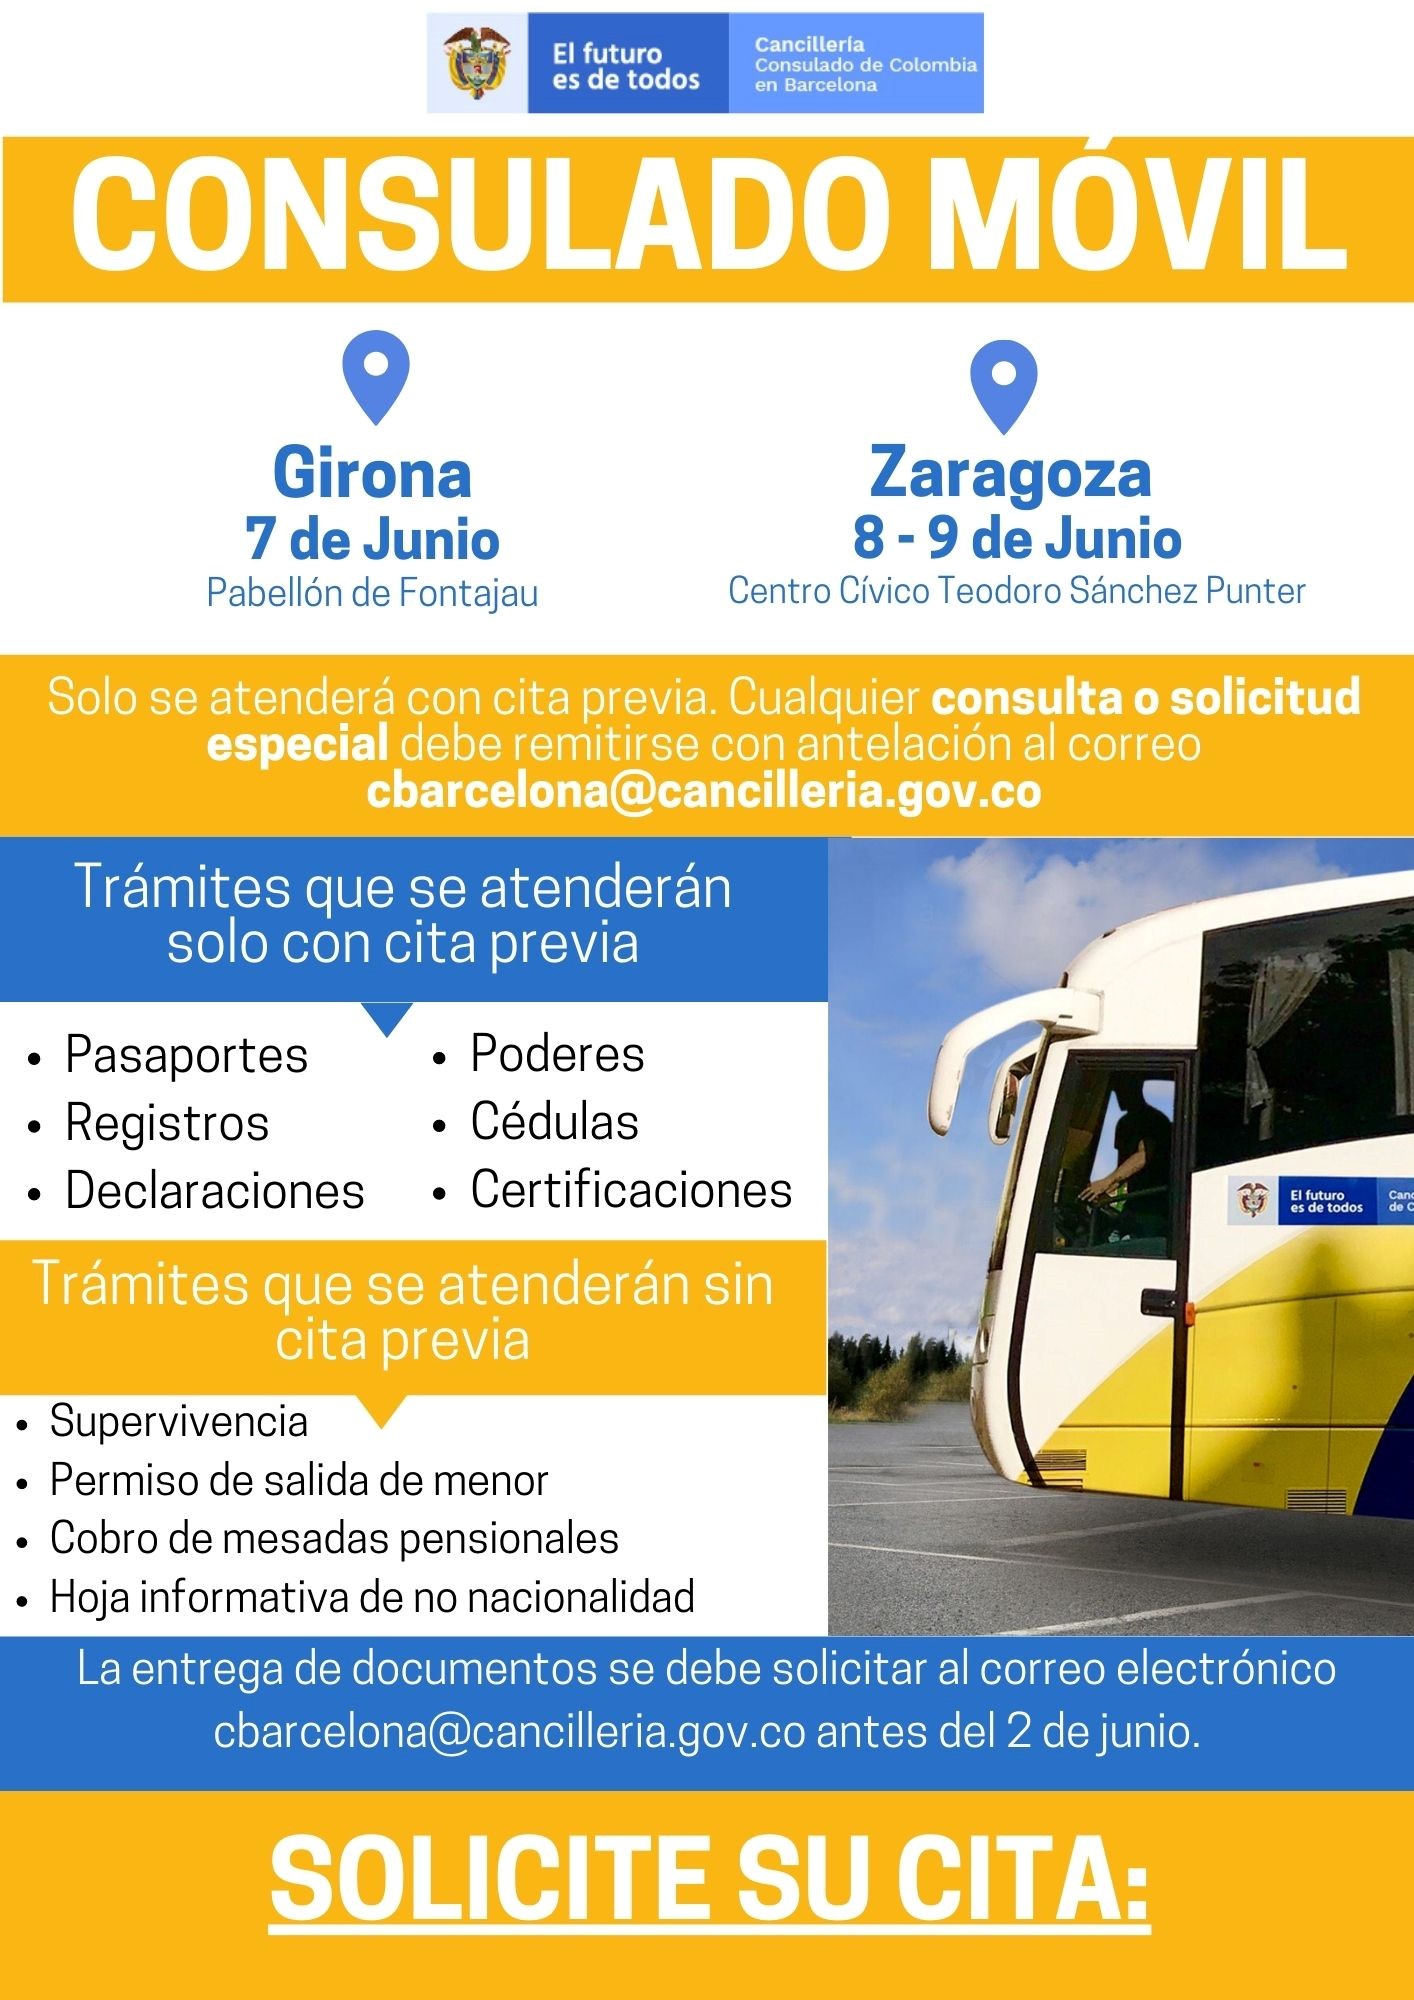 Consulado móvil del 7 al 9 de junio en Girona y Zaragoza Consulado de